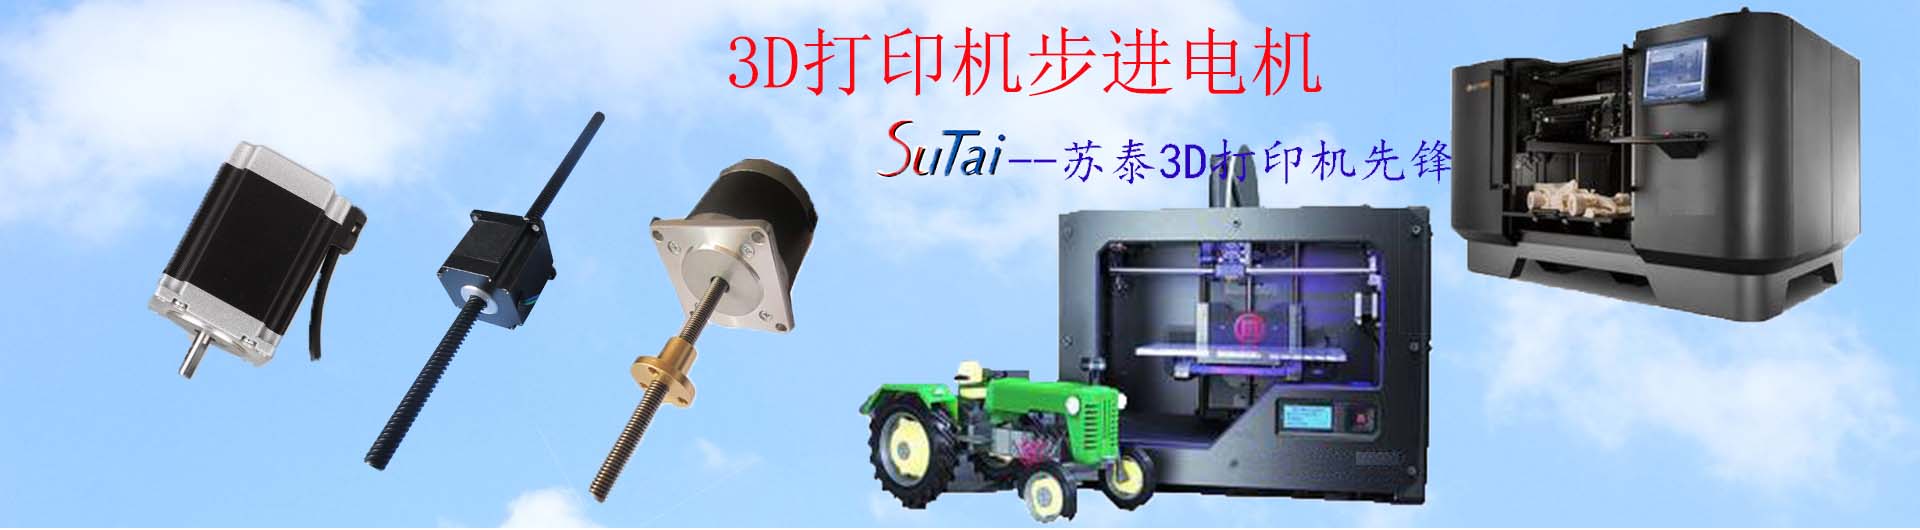 Changzhou SutaiAppliance Electrical aCo.,Ltd